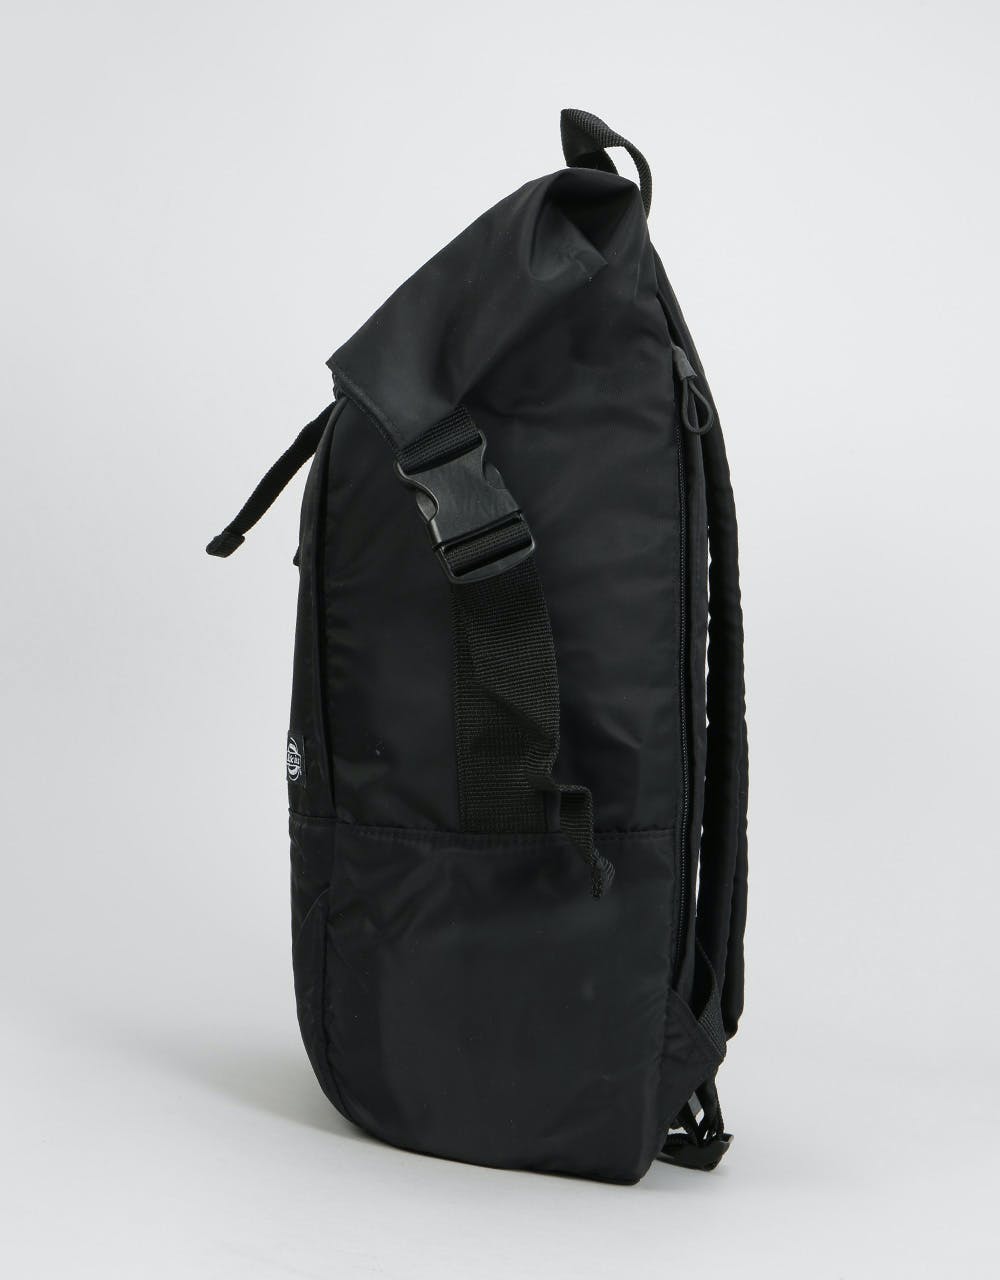 Dickies Dunmore Backpack - Black